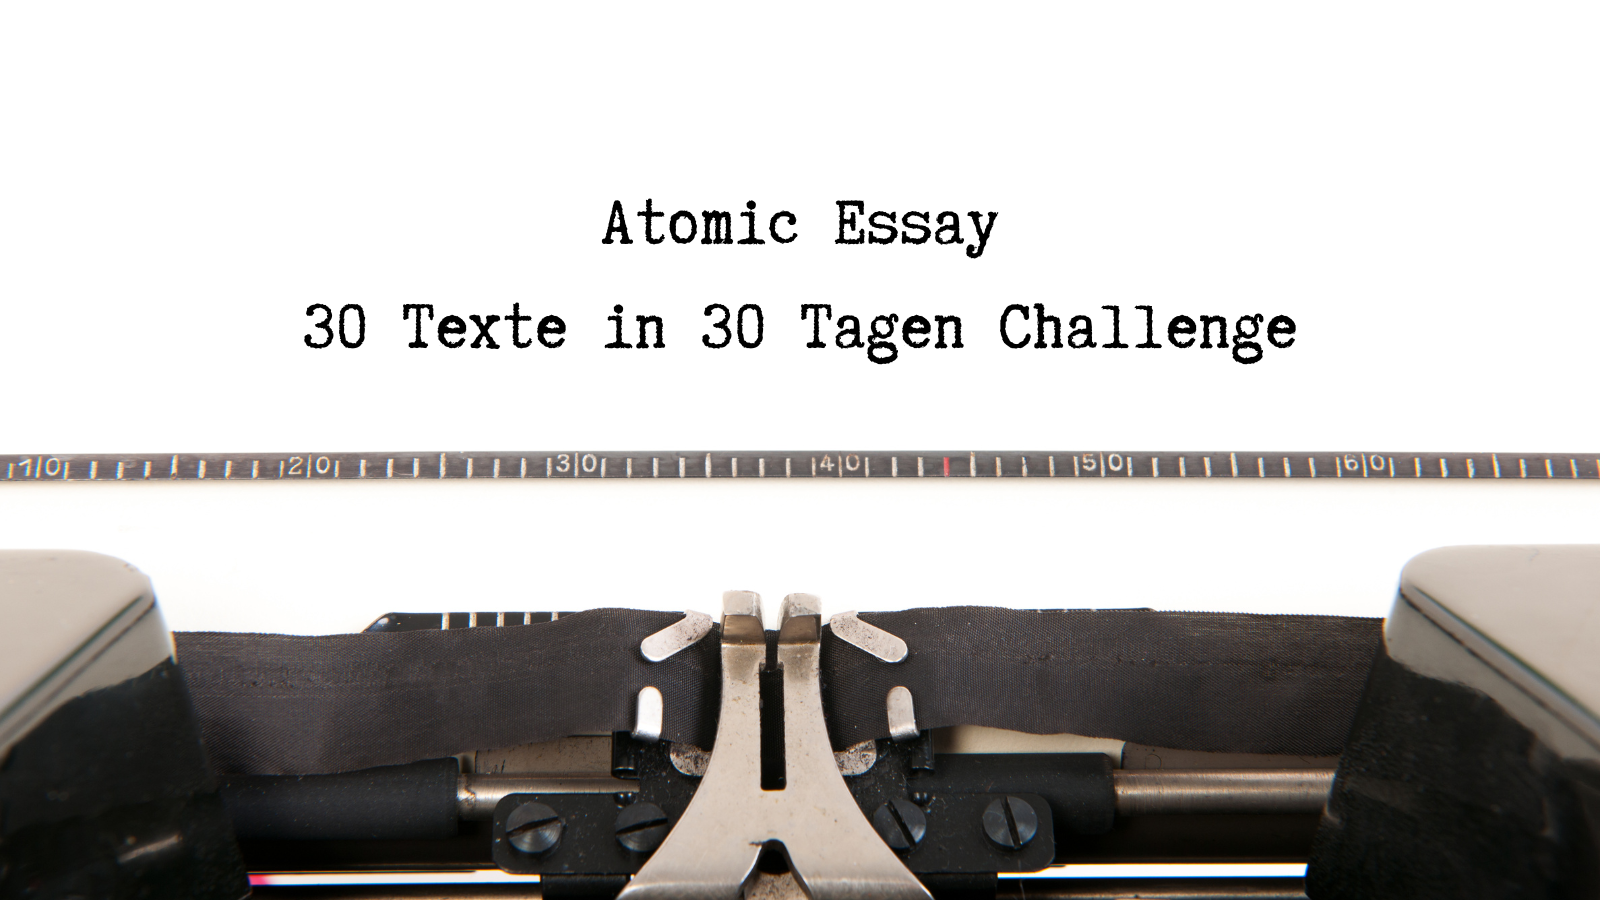 30 Texte in 30 Tagen: Eine Atomic Essay Challenge